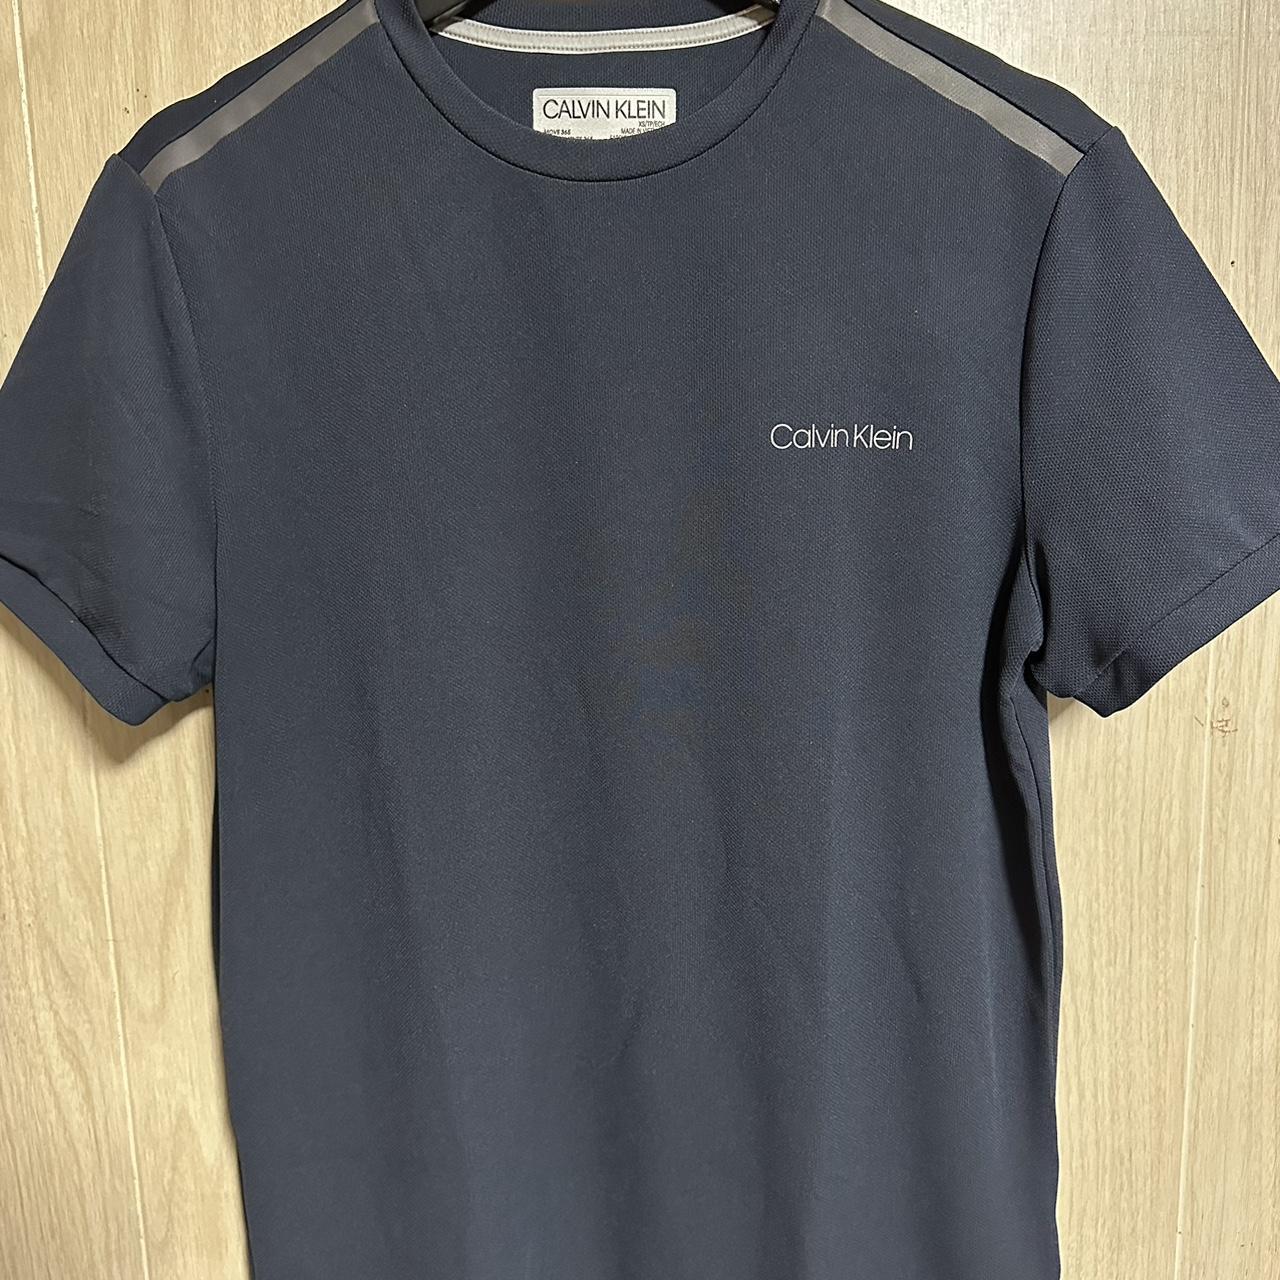 Calvin Klein and... - T shirt lightweight Very Depop sports